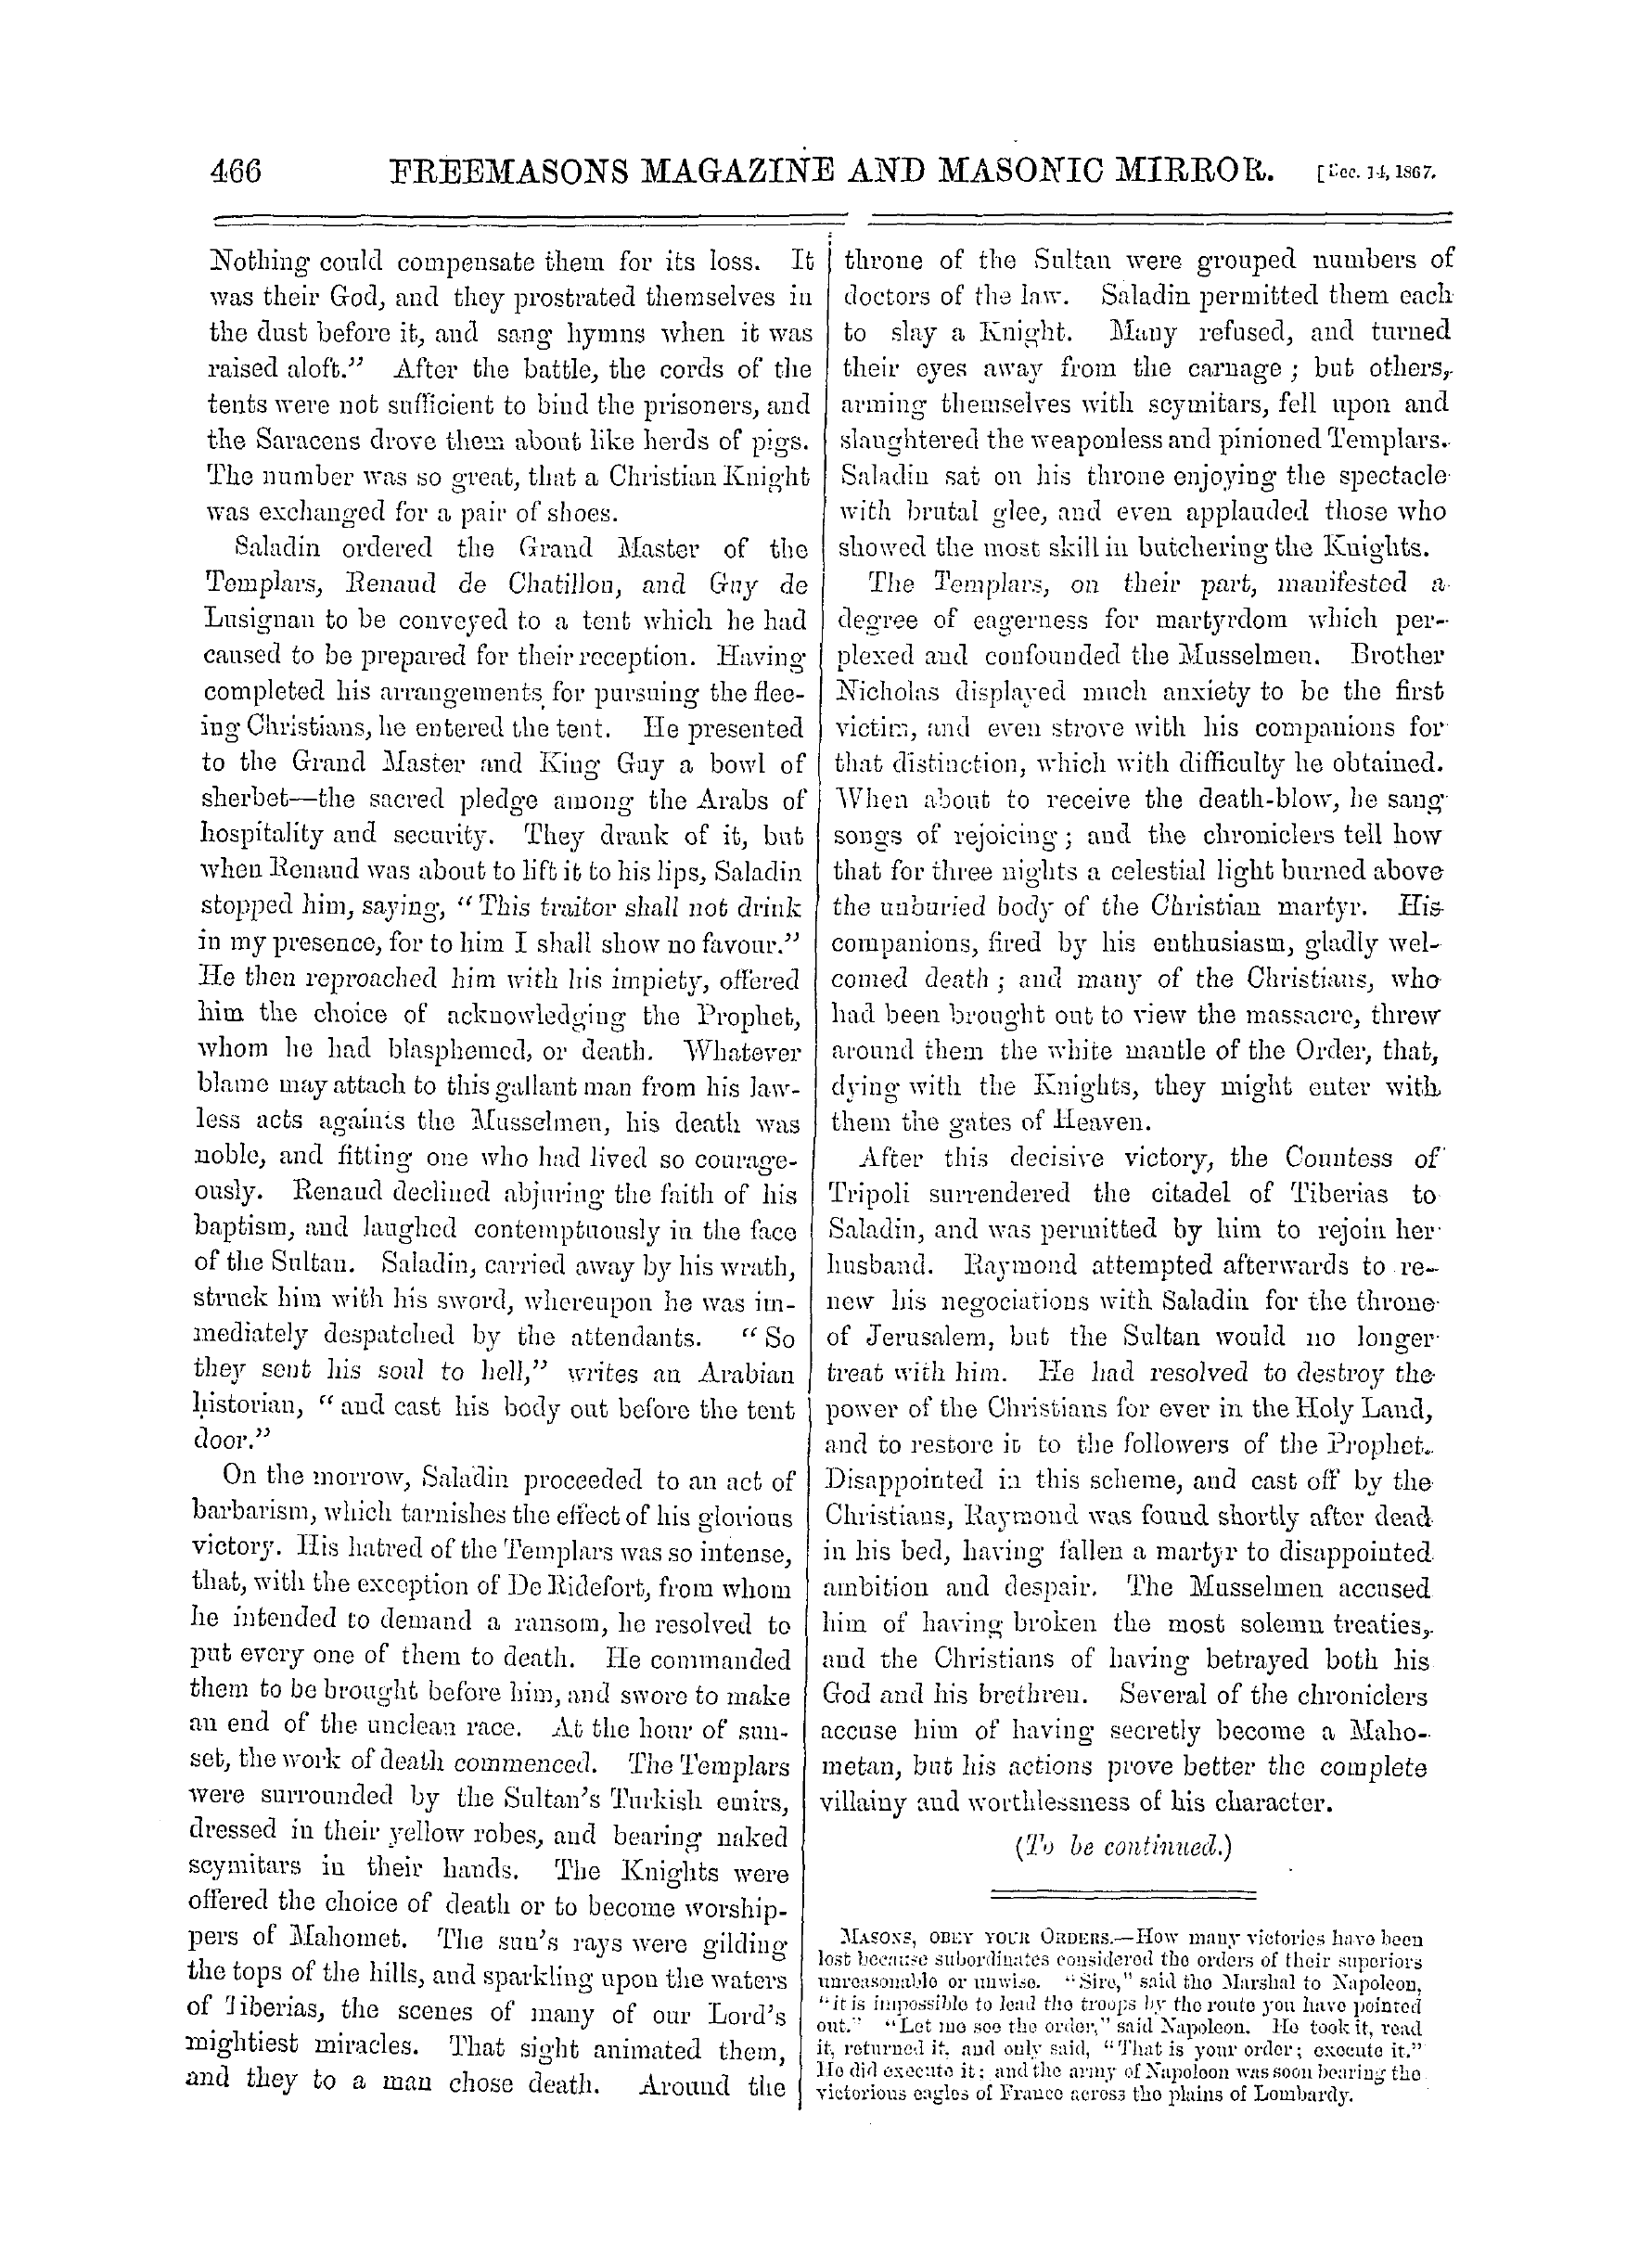 The Freemasons' Monthly Magazine: 1867-12-14: 6